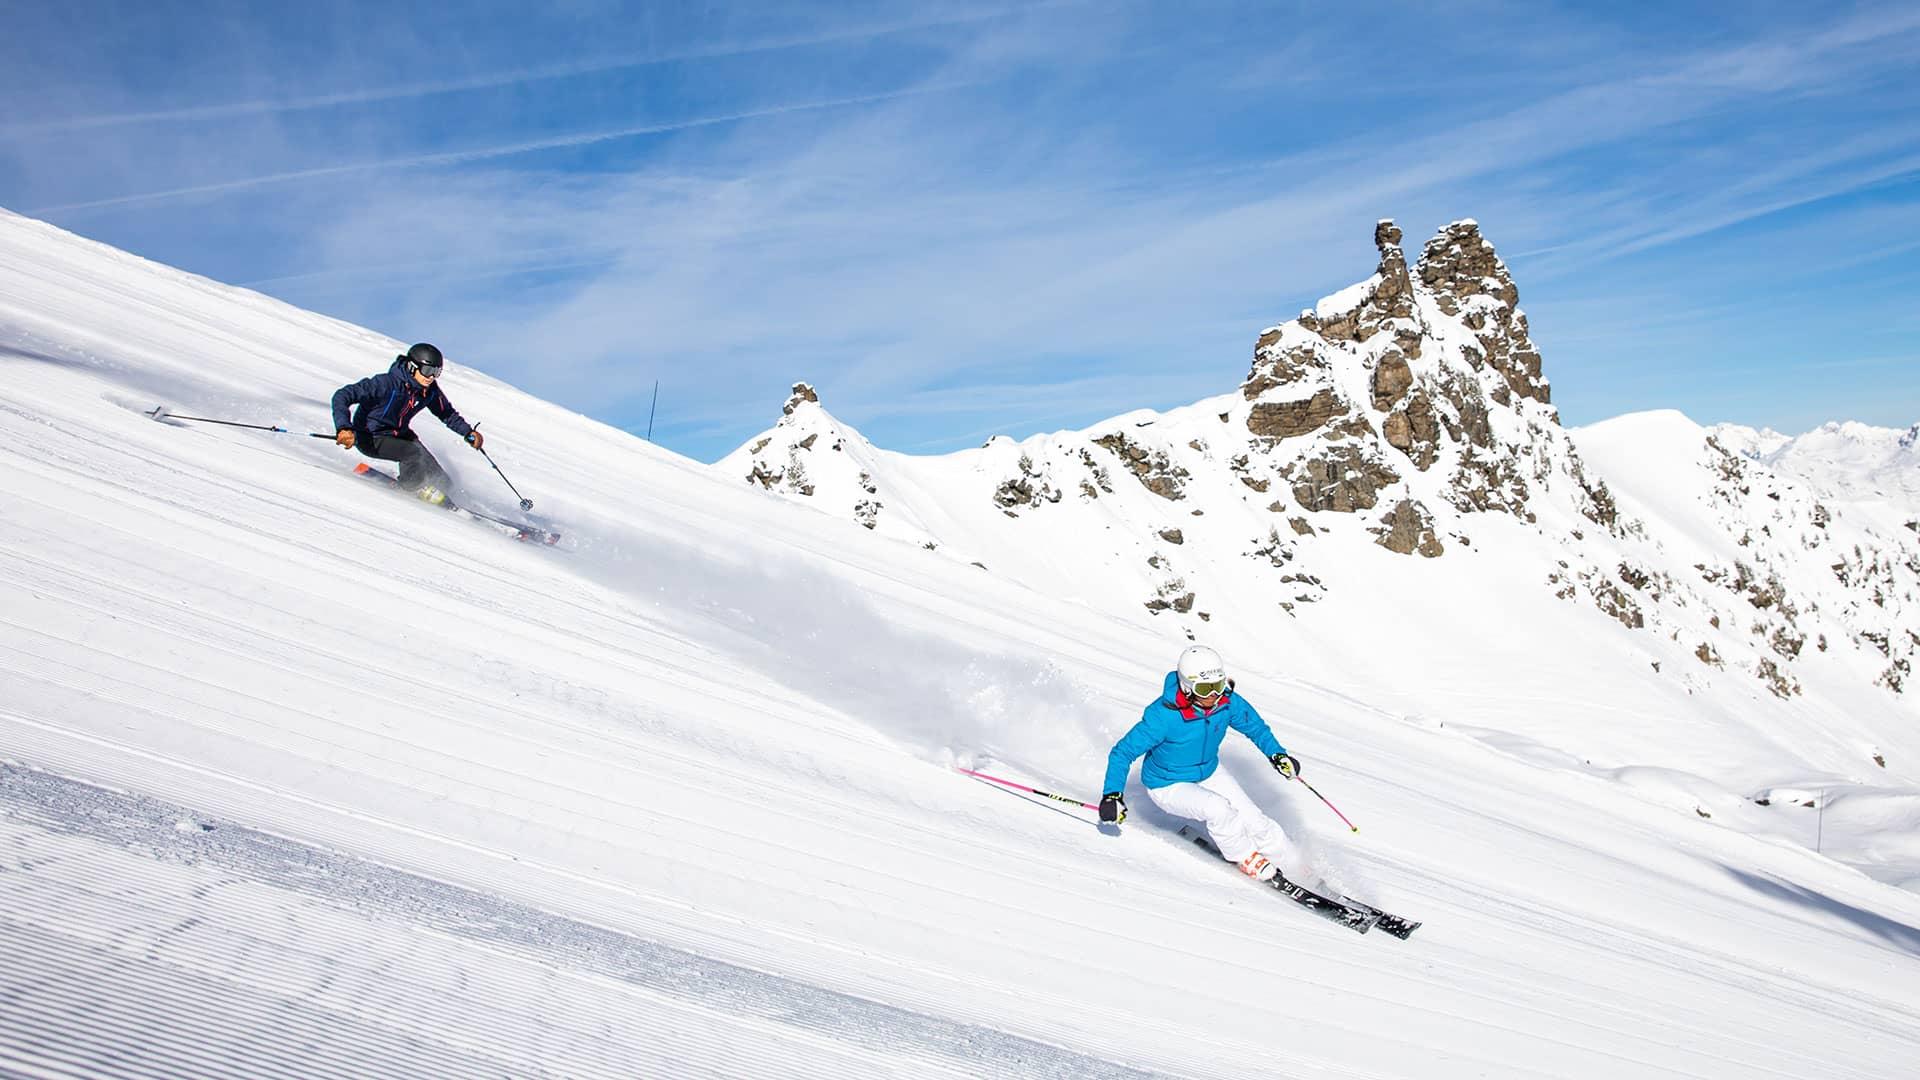 The 3 Vallées ski area open since 10 December 2022